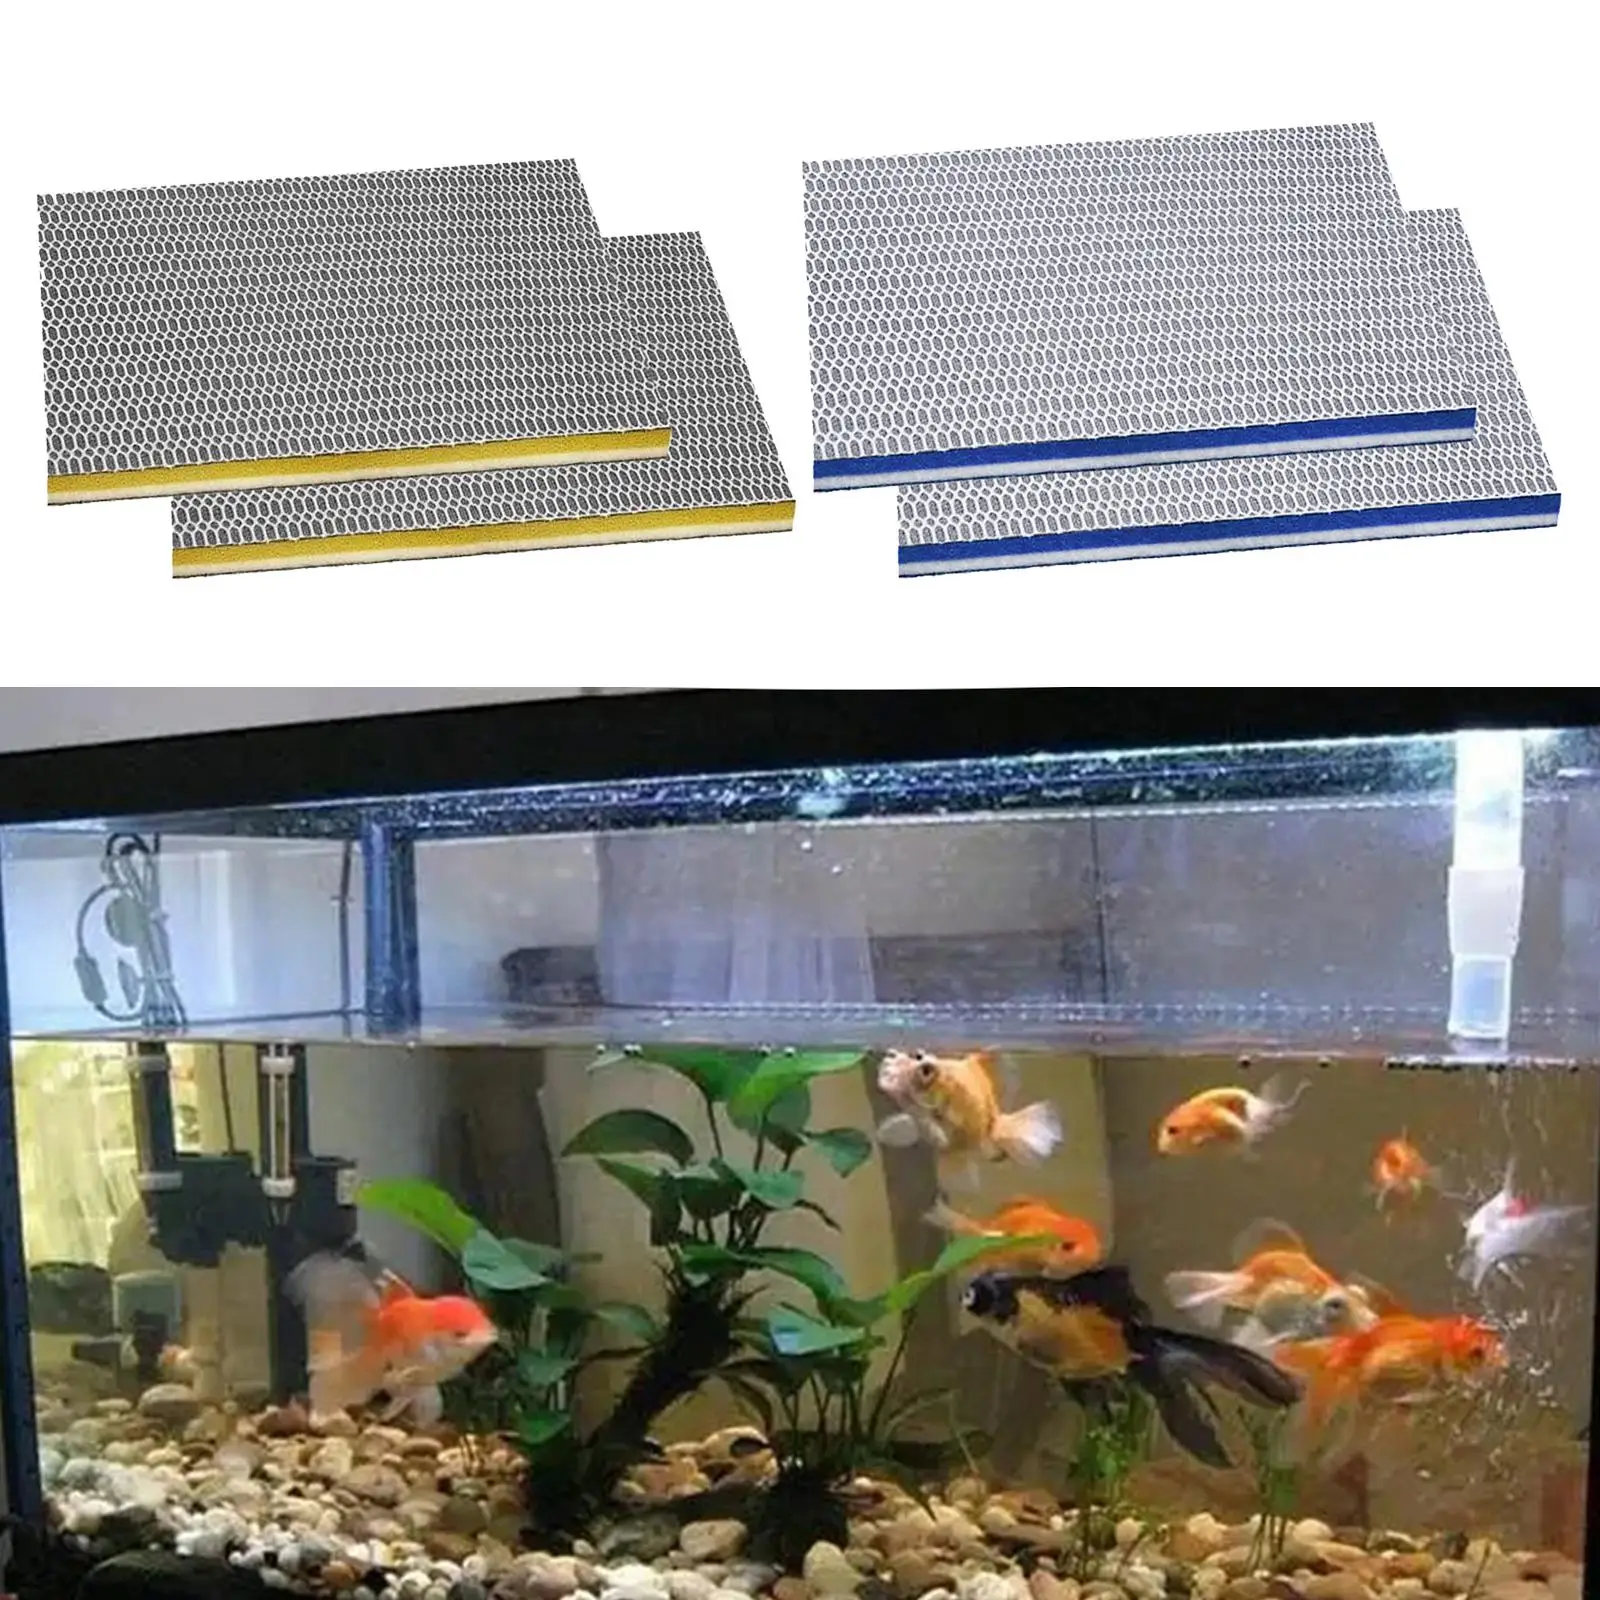 2Pcs Professional Aquarium Media Replaces Cotton for Fish Tank Aquarium Pond